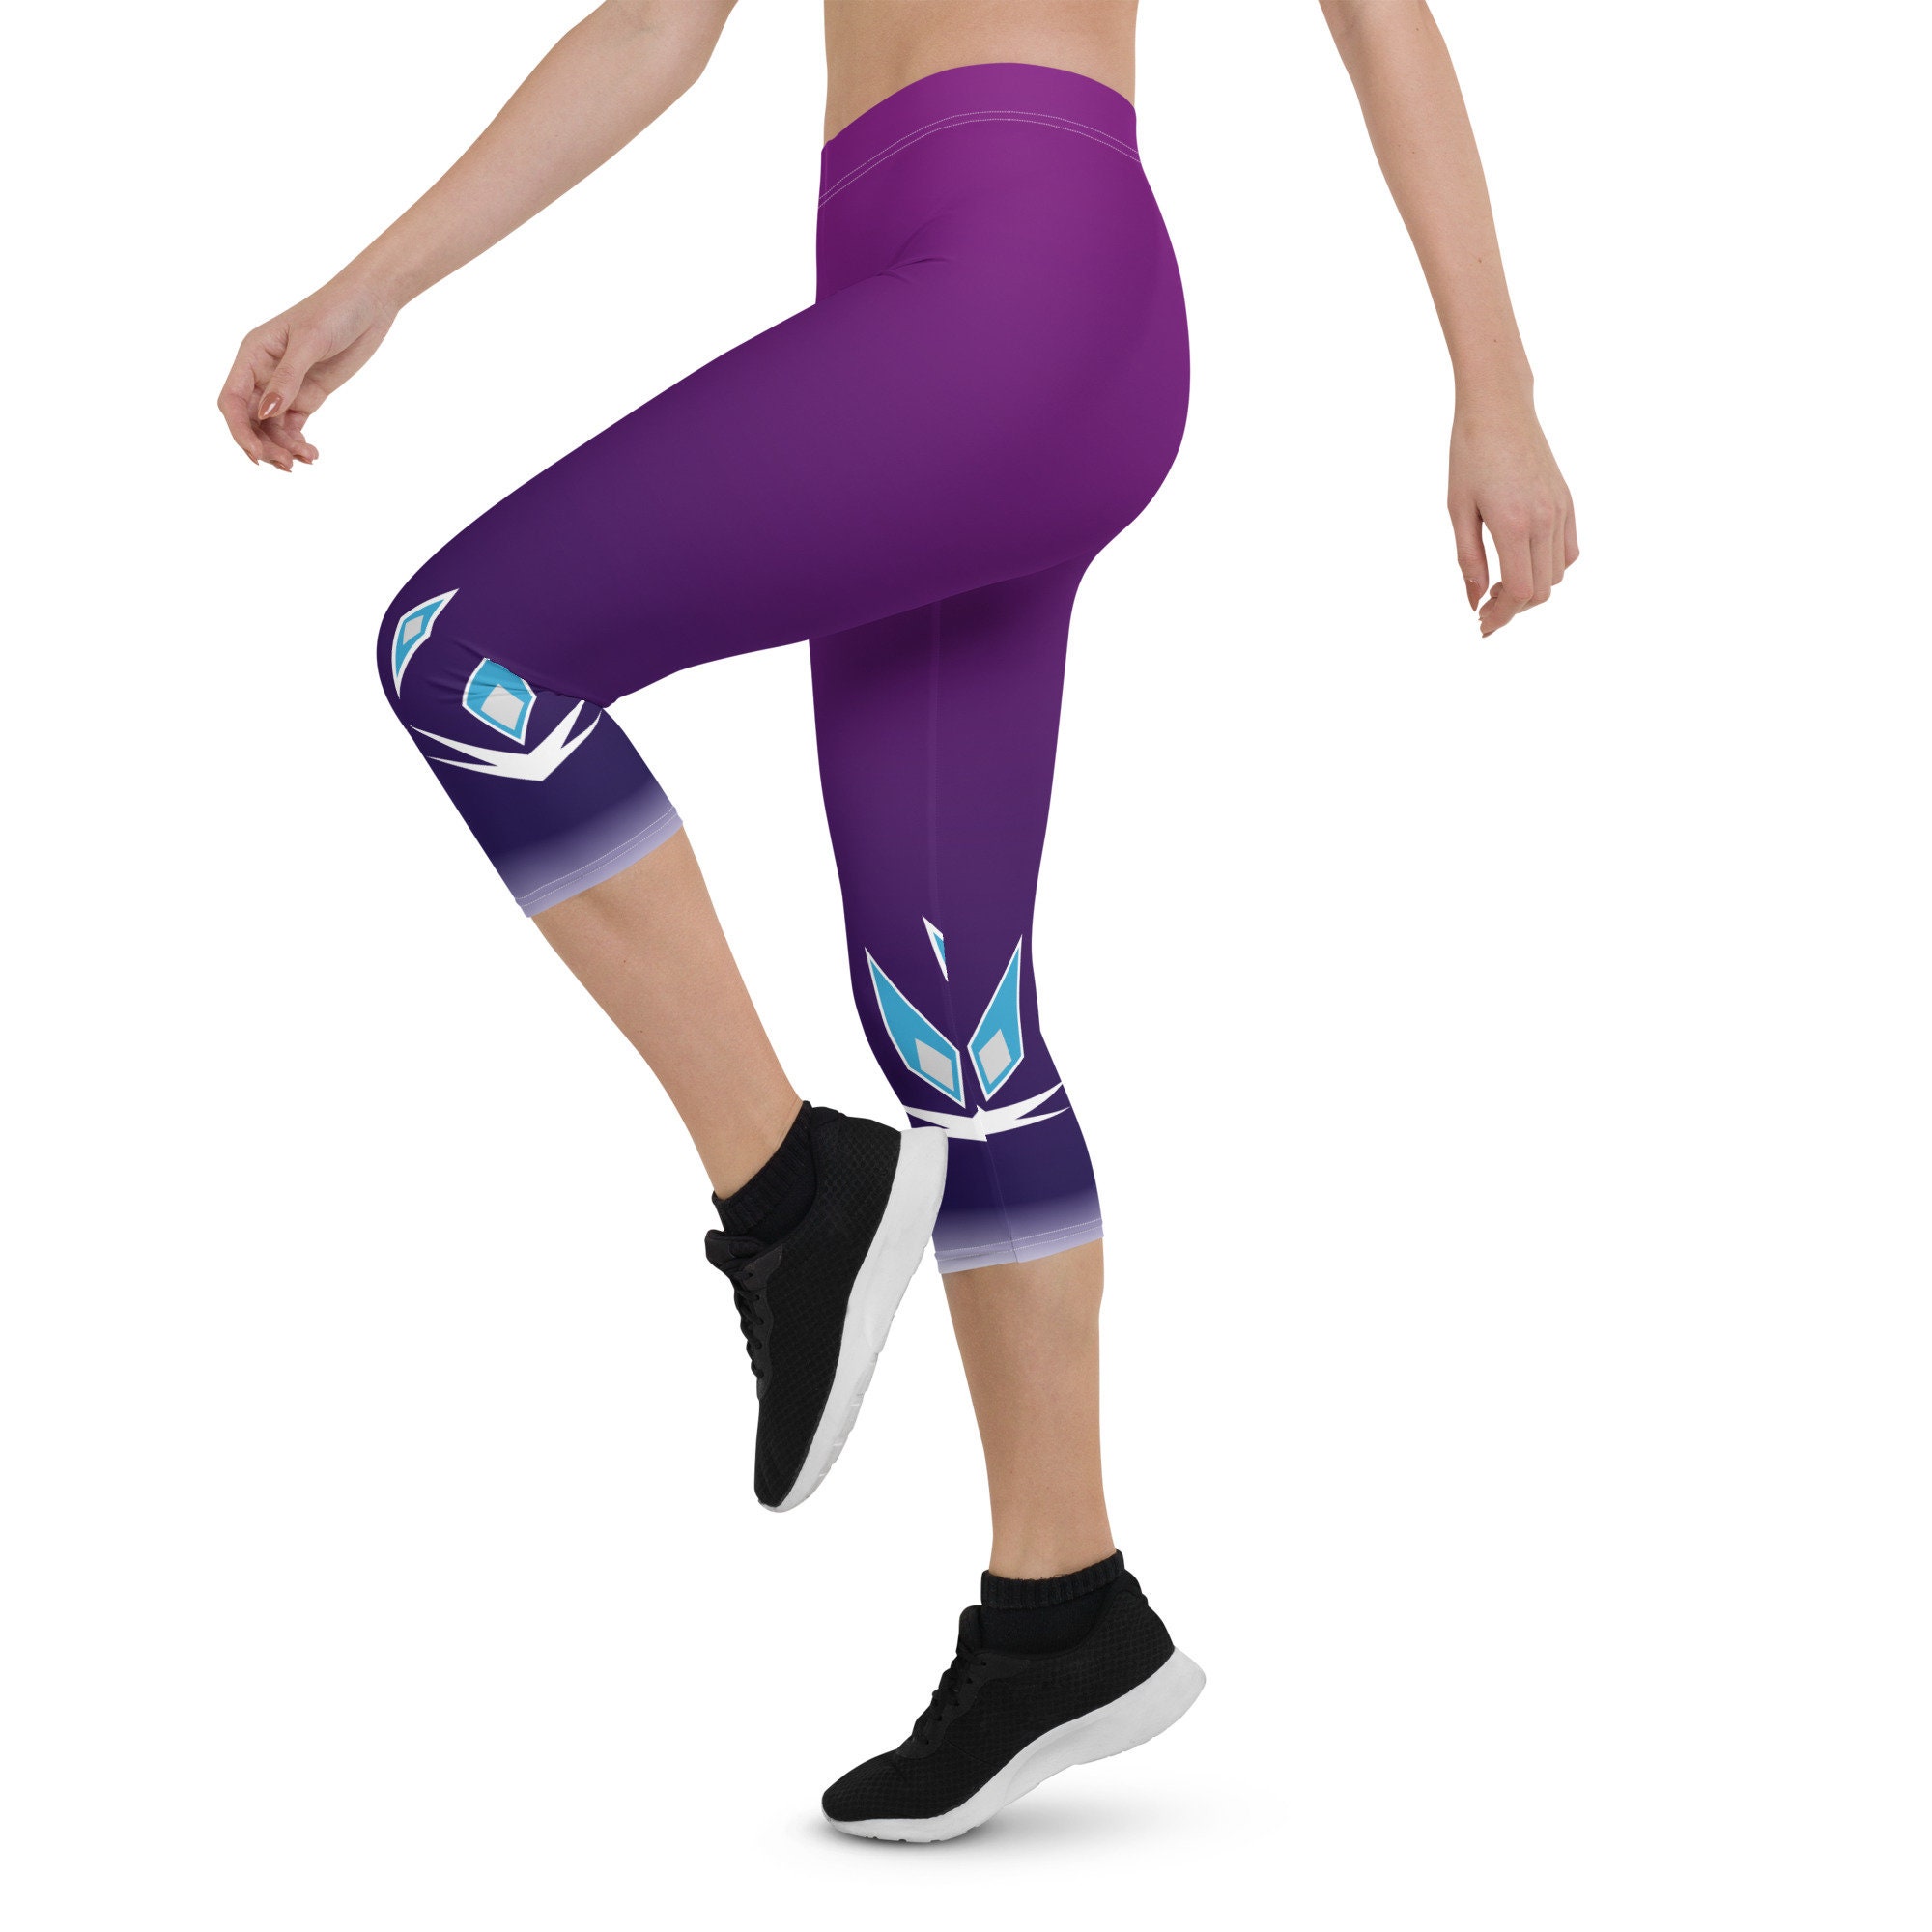 Ice Queen 2 Purple Running Costume Capri Leggings